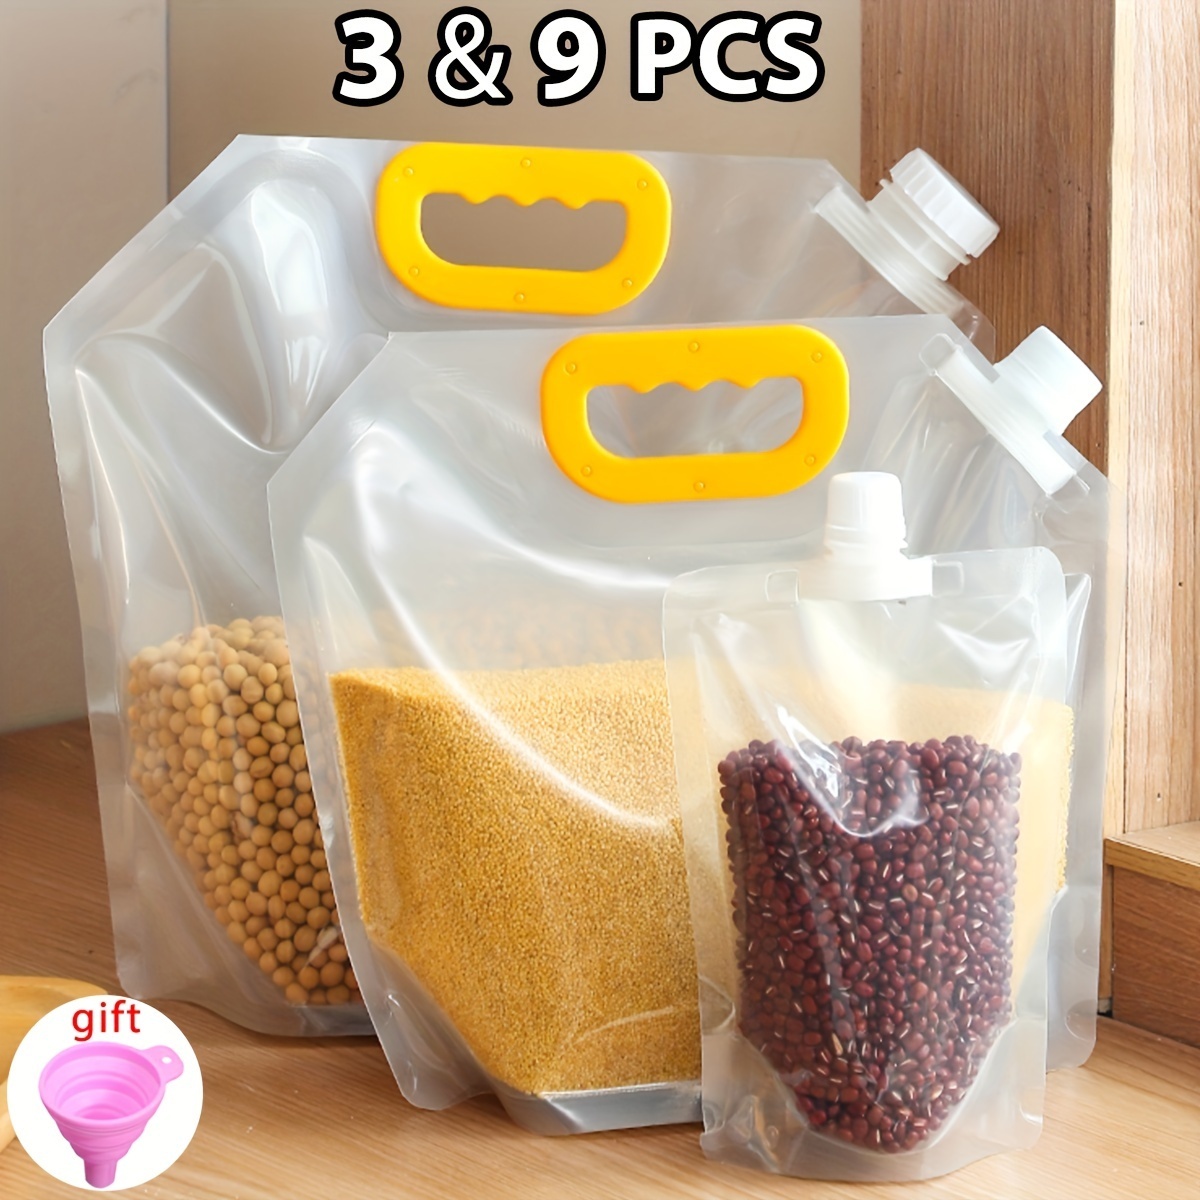 Plastic 2.5L Food Storage Bag Grain Storage Suction Bags